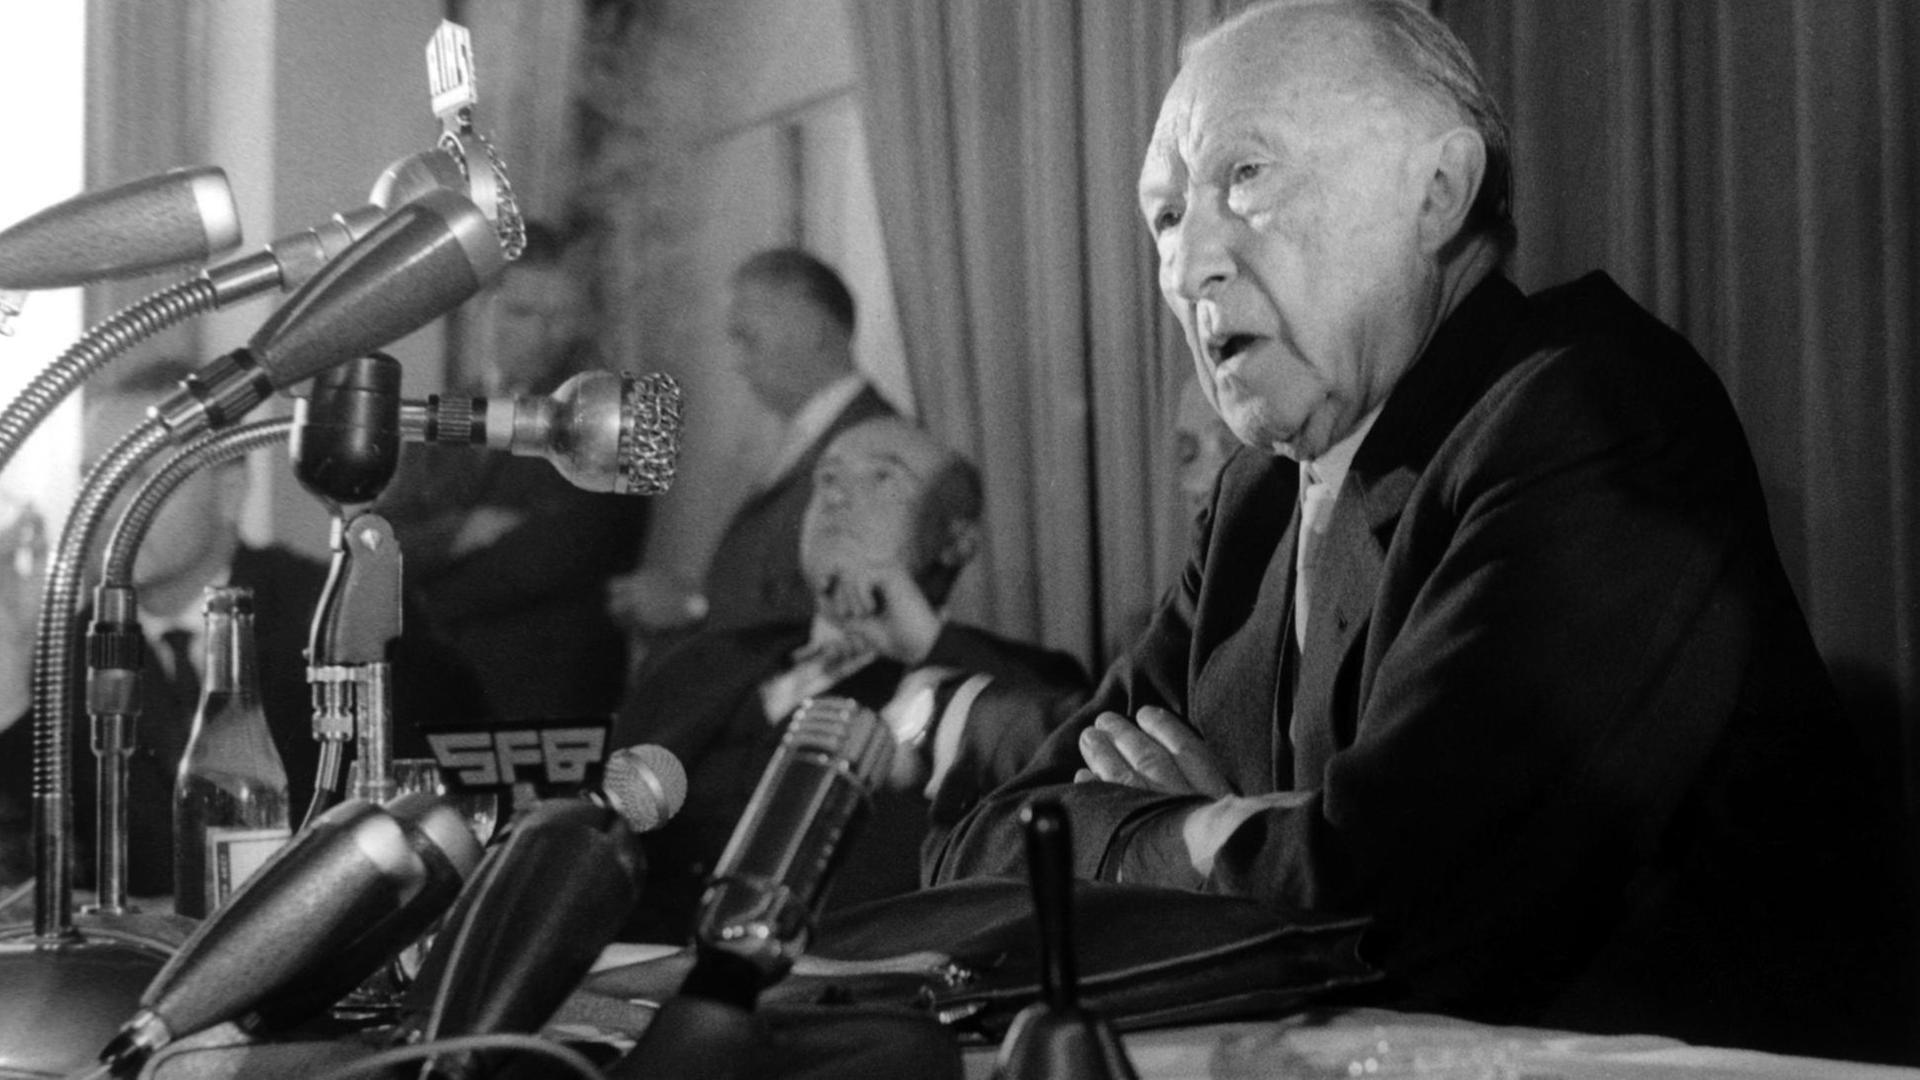 Bundeskanzler Konrad Adenauer hält am 22.08.1961 in Berlin eine Pressekonferenz anlässlich seines Besuches im Notaufnahmelager Marienfelde. Adenauer war von 1949 bis 1963 der erste Bundeskanzler der Bundesrepublik Deutschland und von 1951 bis 1955 zugleich Bundesaußenminister.